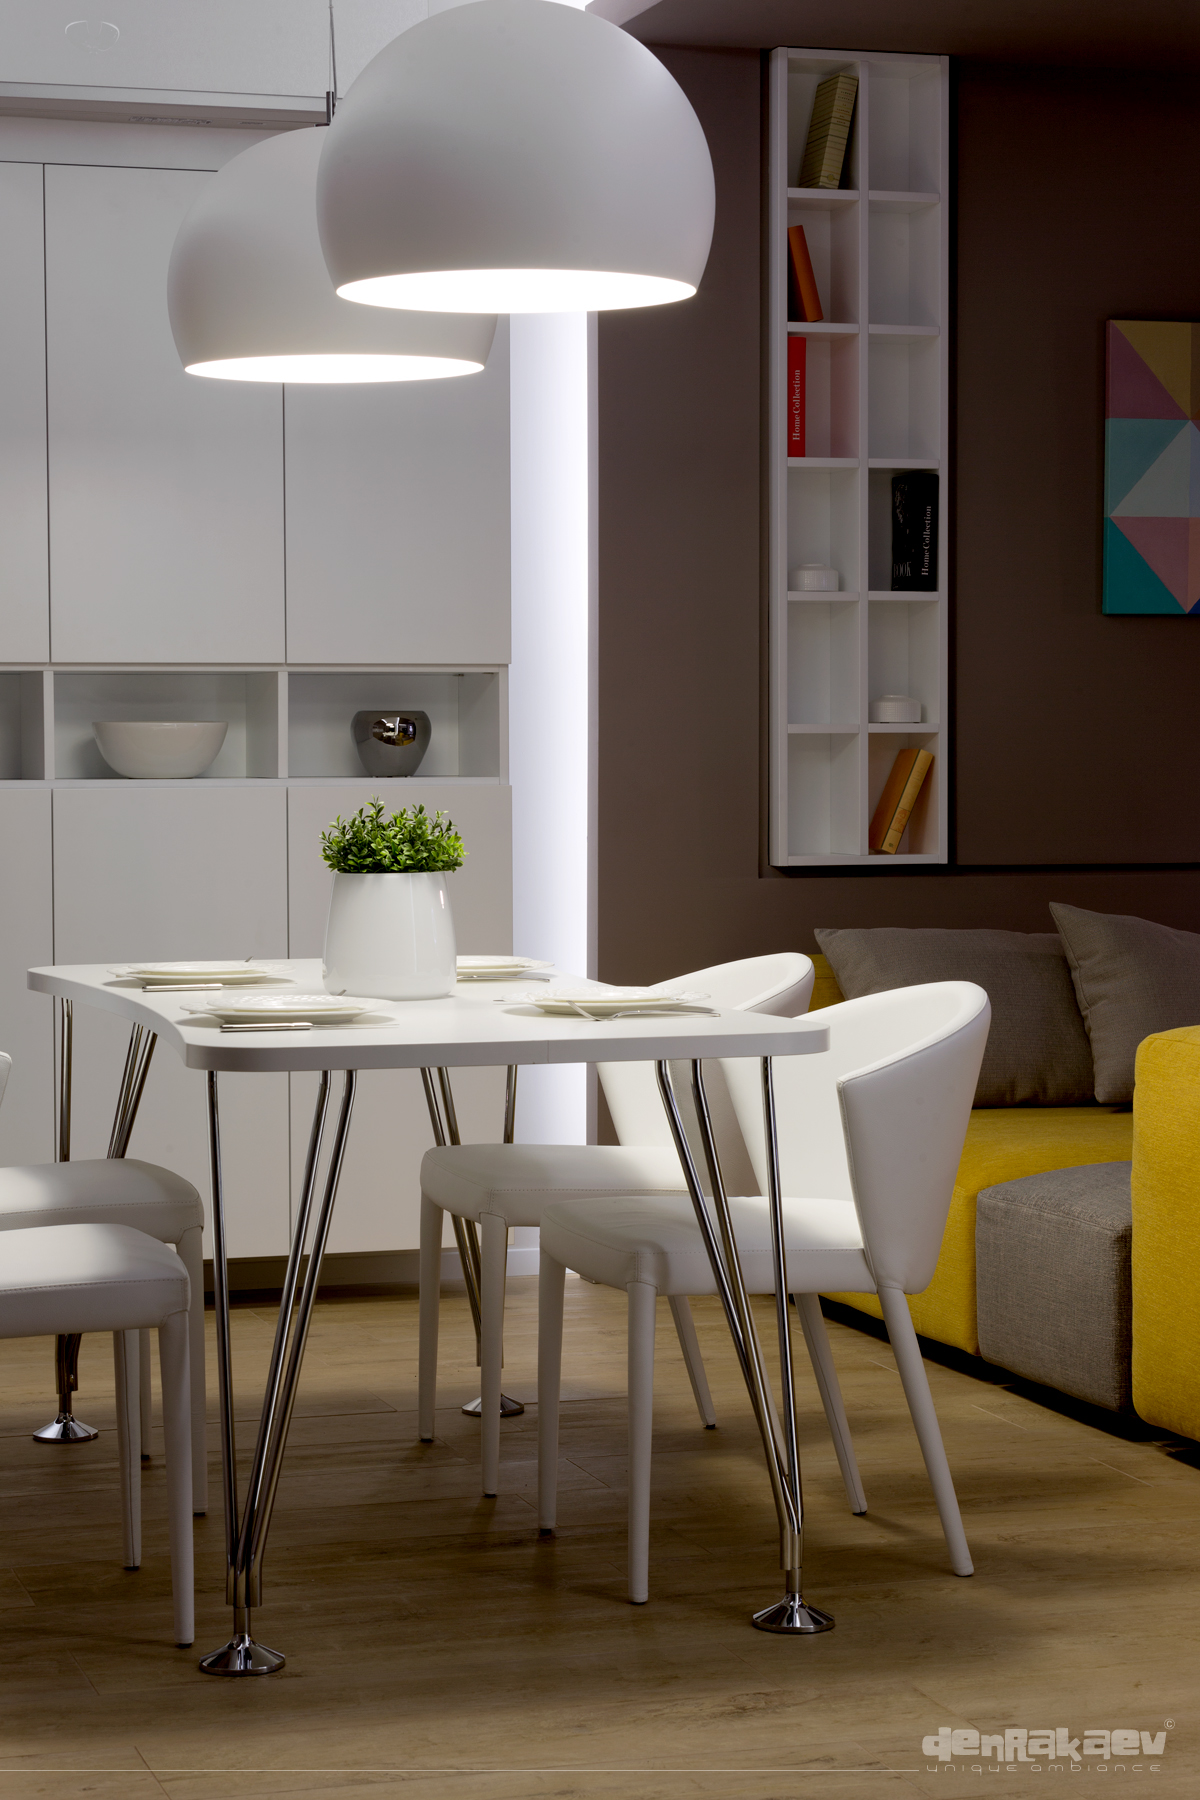 designe Interior apartments flat contemporary